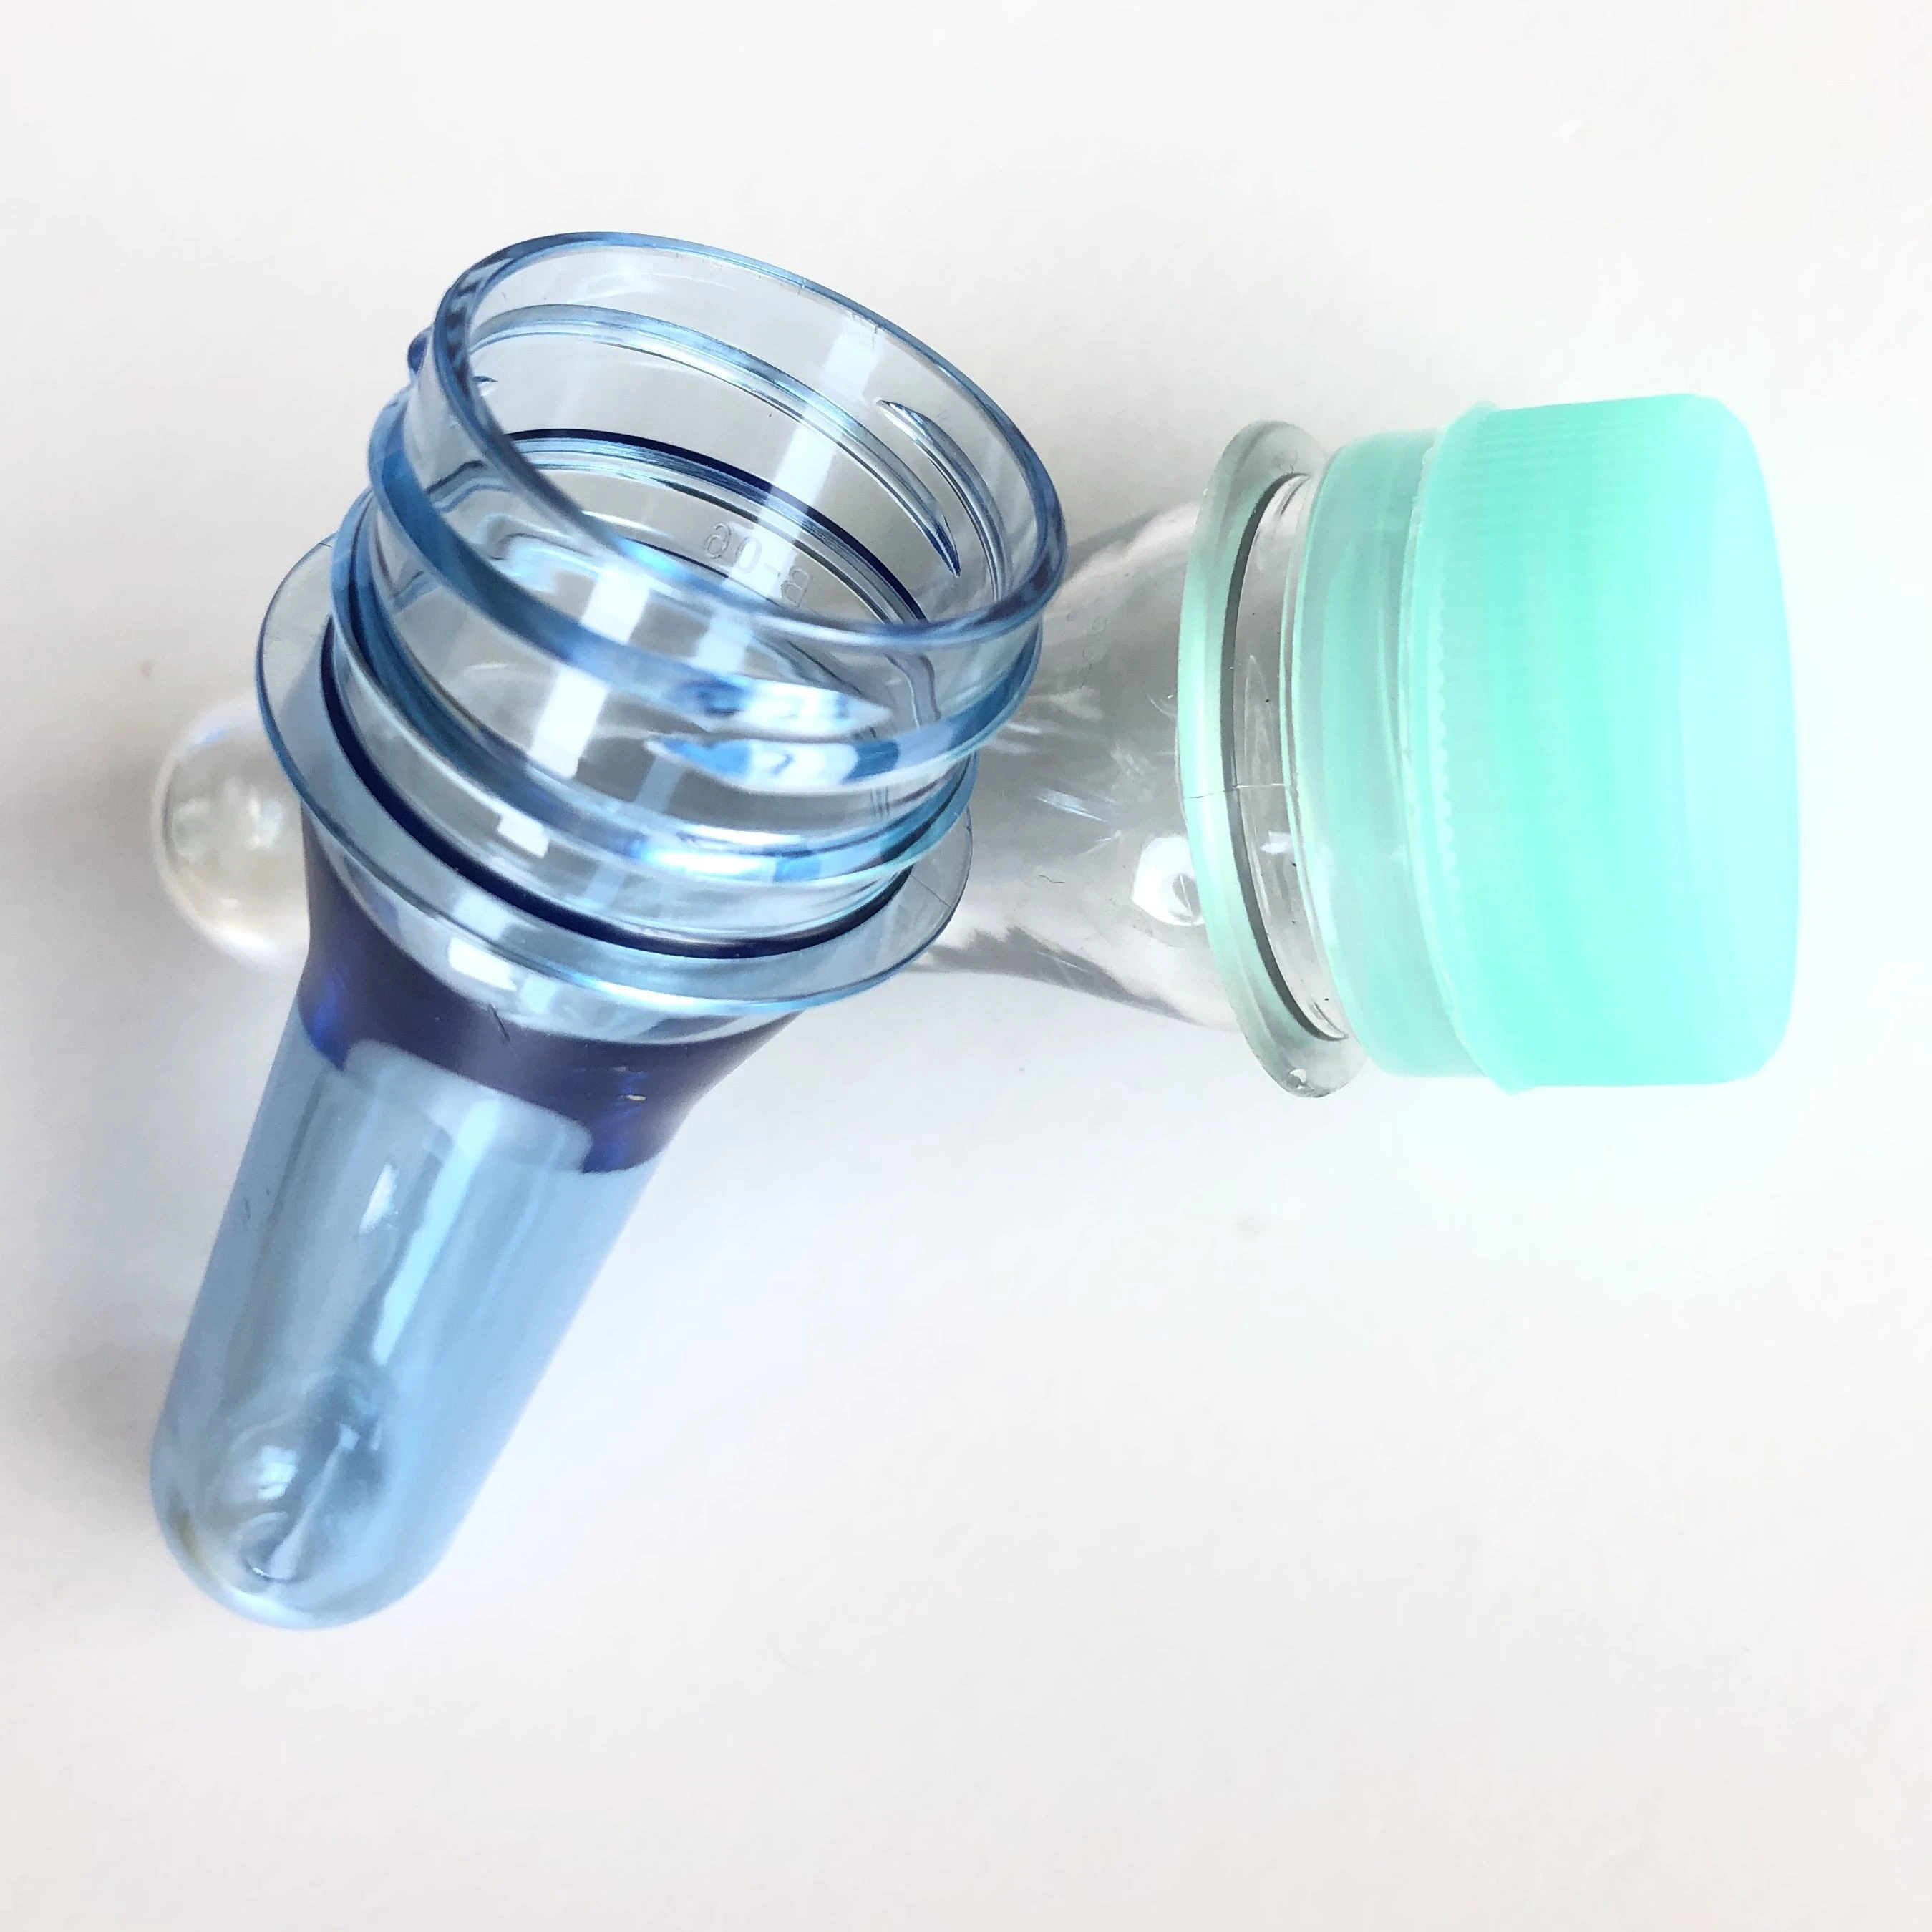 Plastic pet bottle cap 30-25 mm - Buy Plastic pet bottle cap 30-25 mm  product on